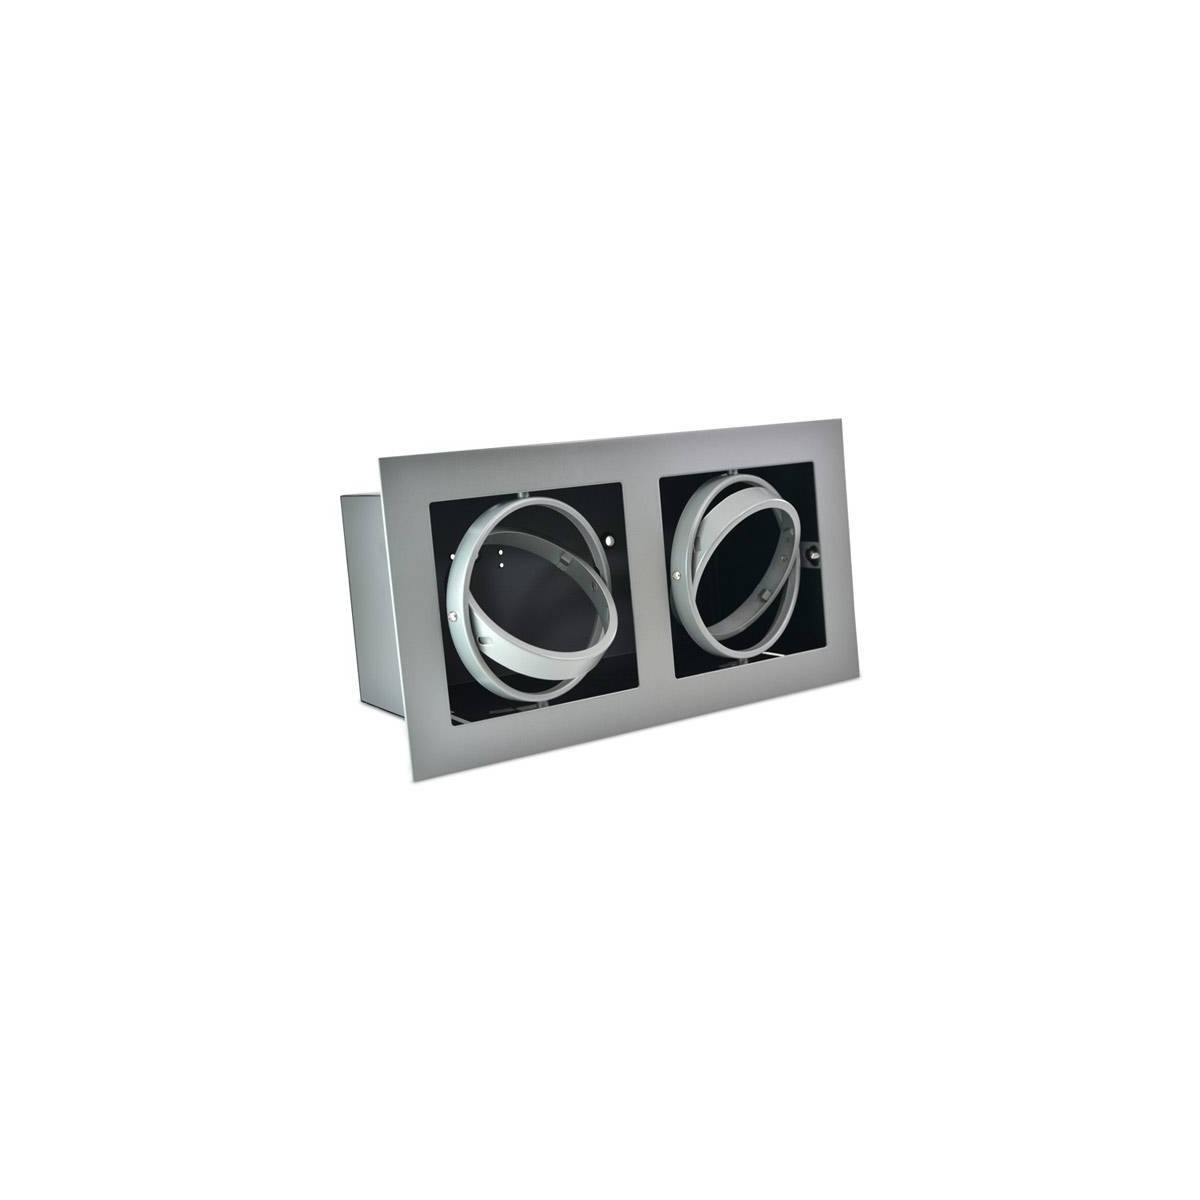 Stahlgelenkwelle für zwei Glühbirnen QR111 LED schwenk- und neigbar 335x175/355x205mm Farbe Grau